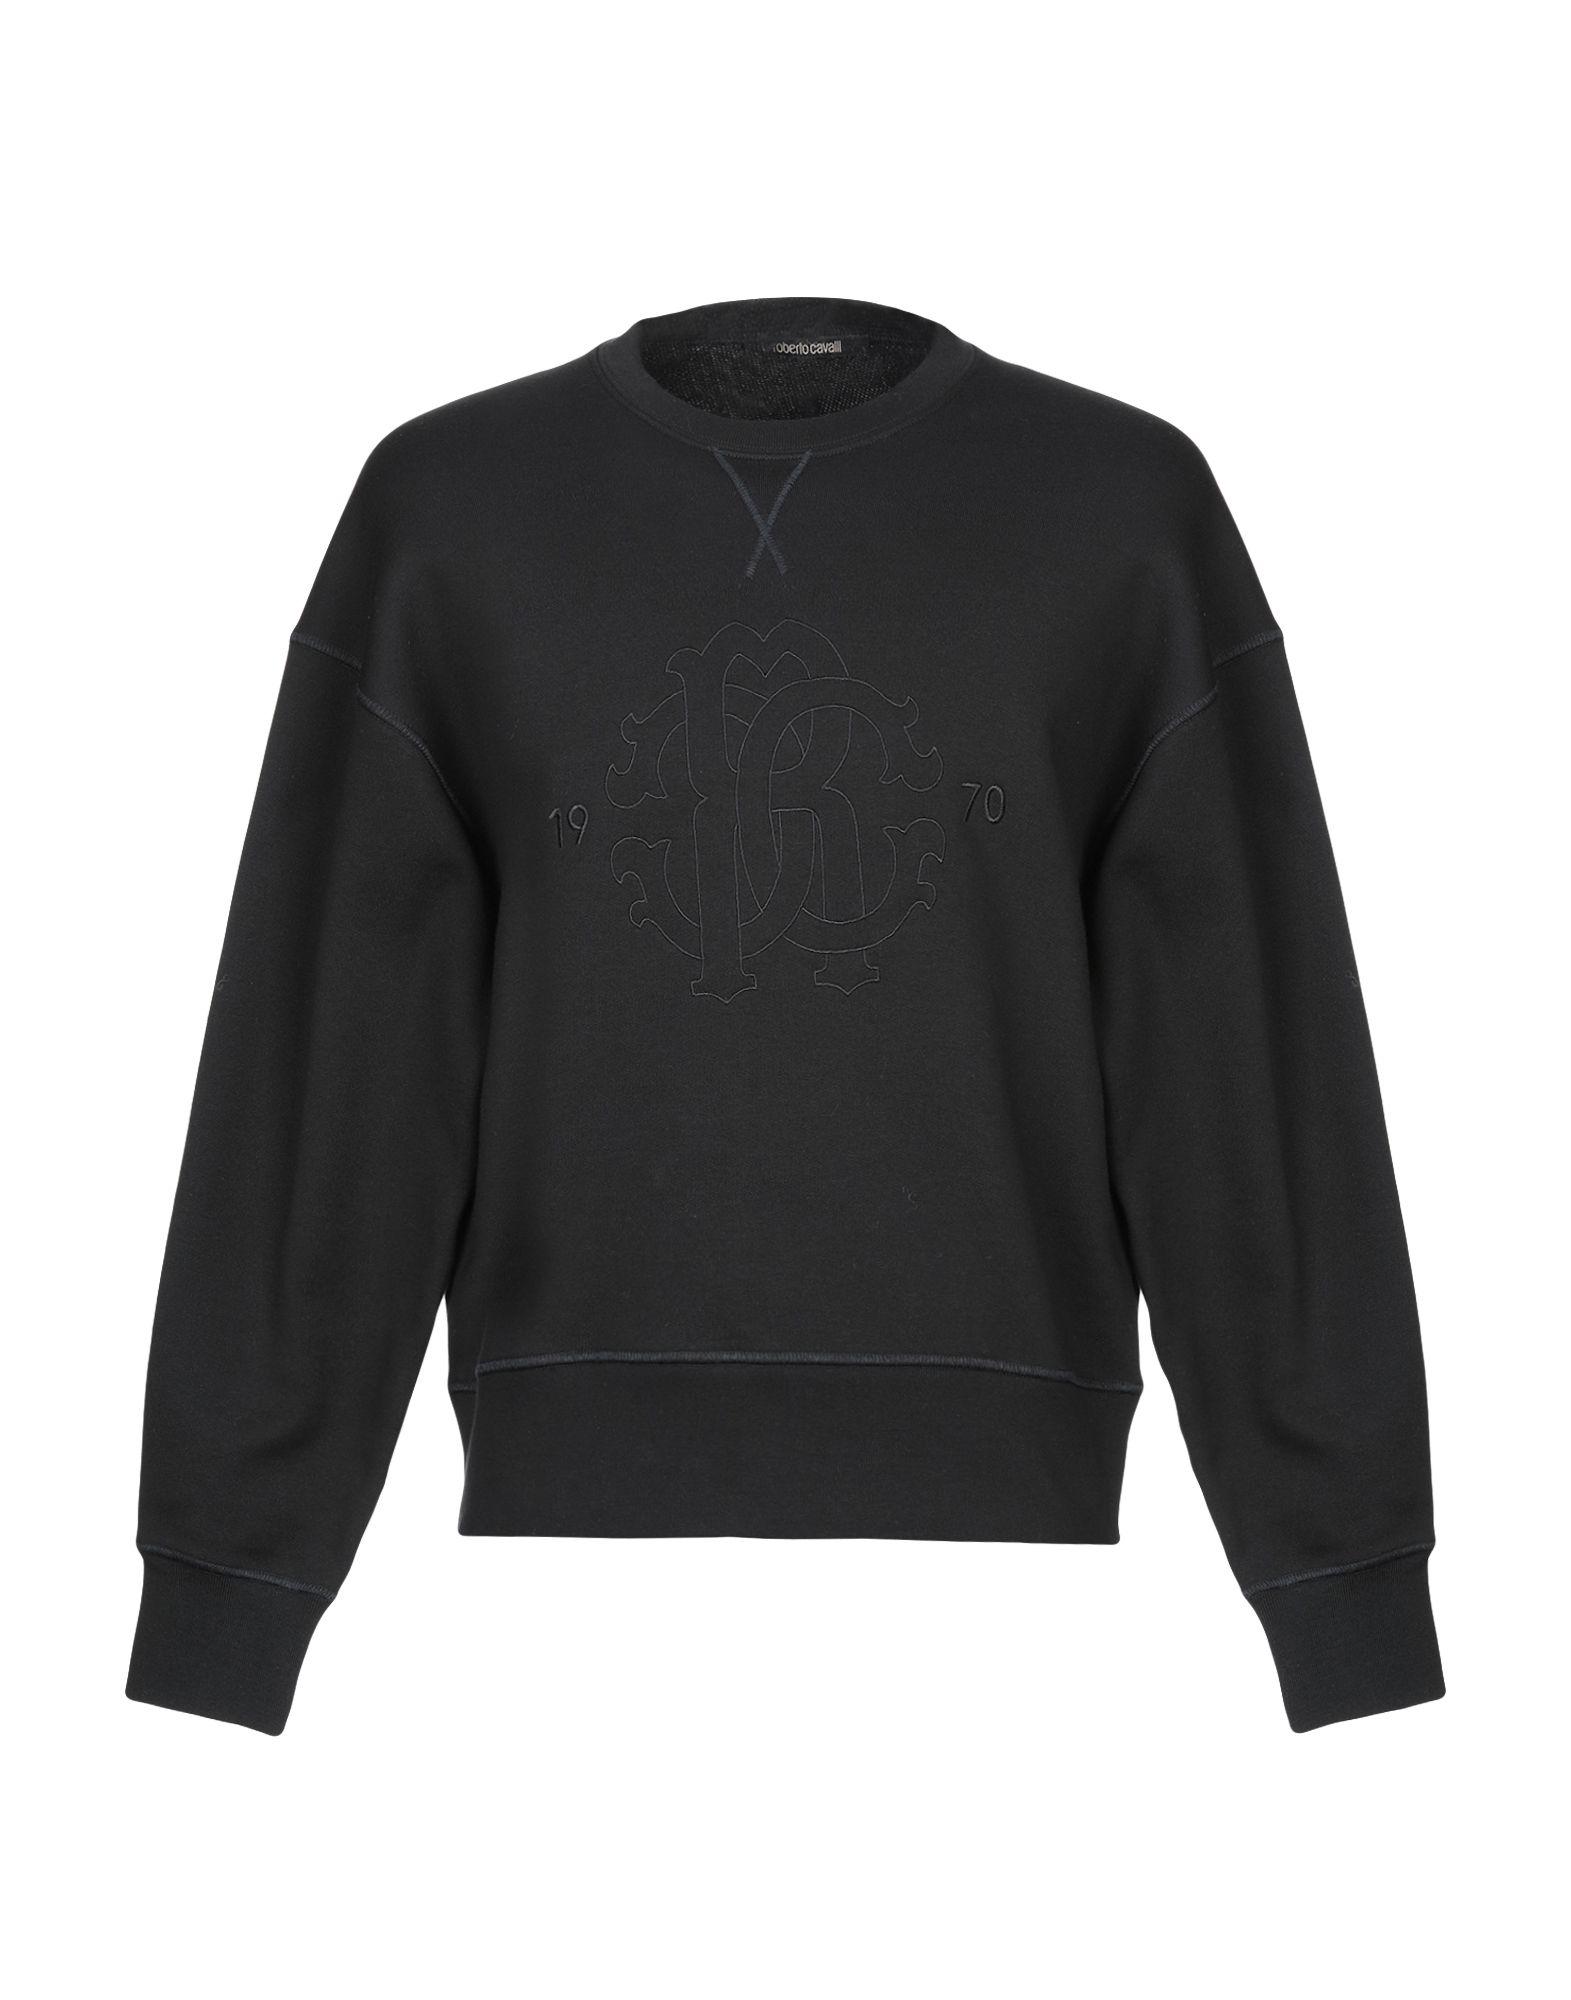 Roberto Cavalli Sweatshirt in Black for Men - Lyst